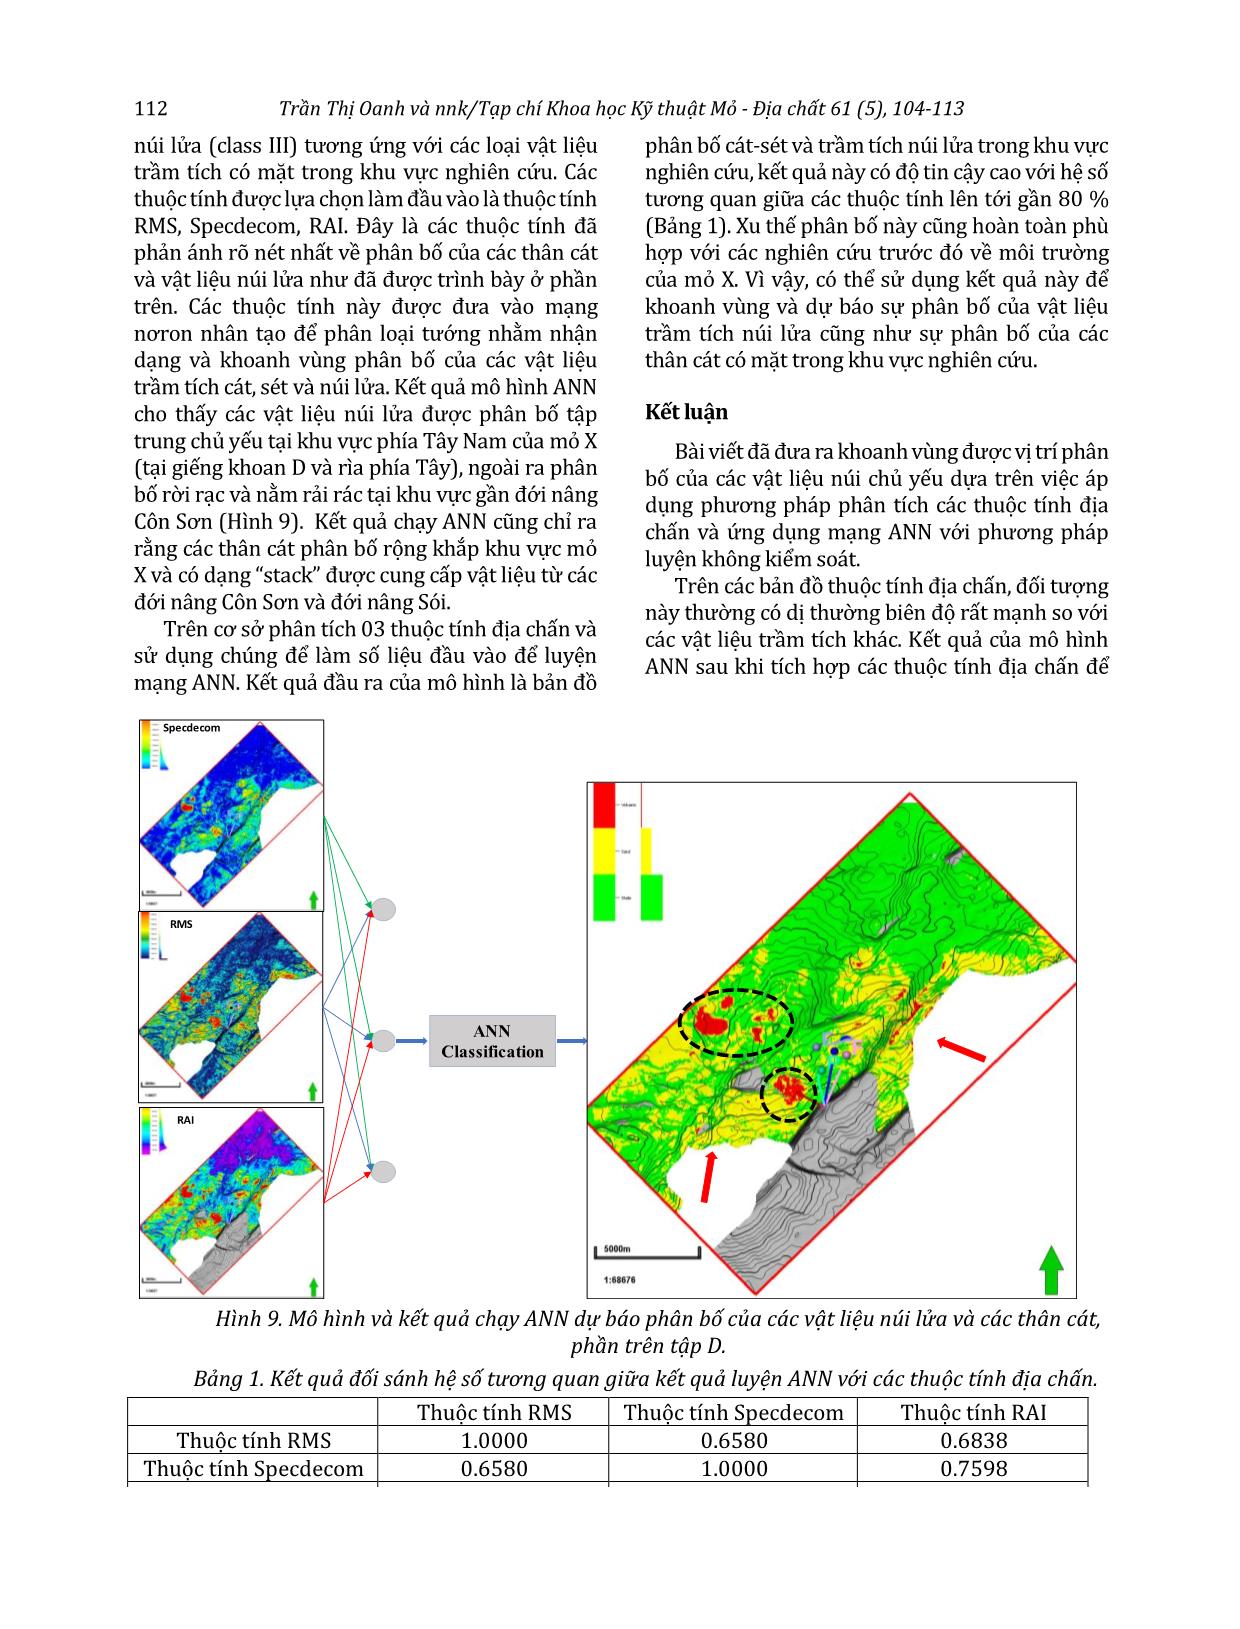 Ứng dụng mạng trí tuệ nhân tạo dự báo phân bố vật liệu núi lửa trong tập D, mỏ X, bể Cửu Long trang 9